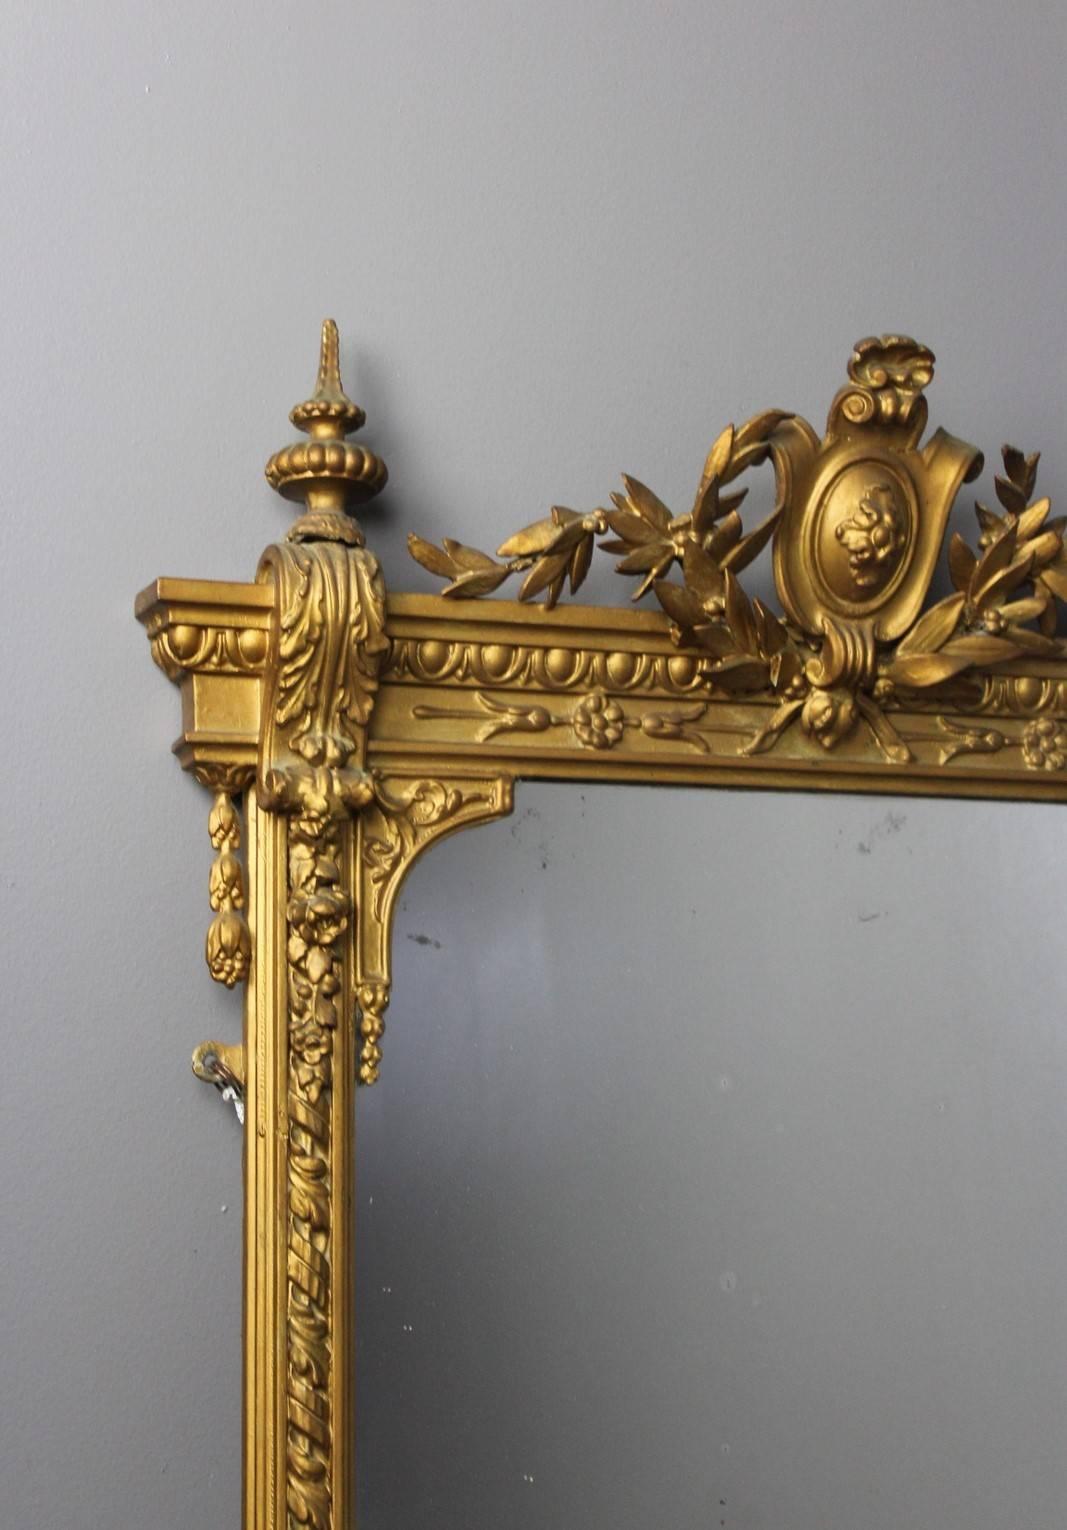 French Provincial Antique Ornate Gilt Mirror Girandole For Sale